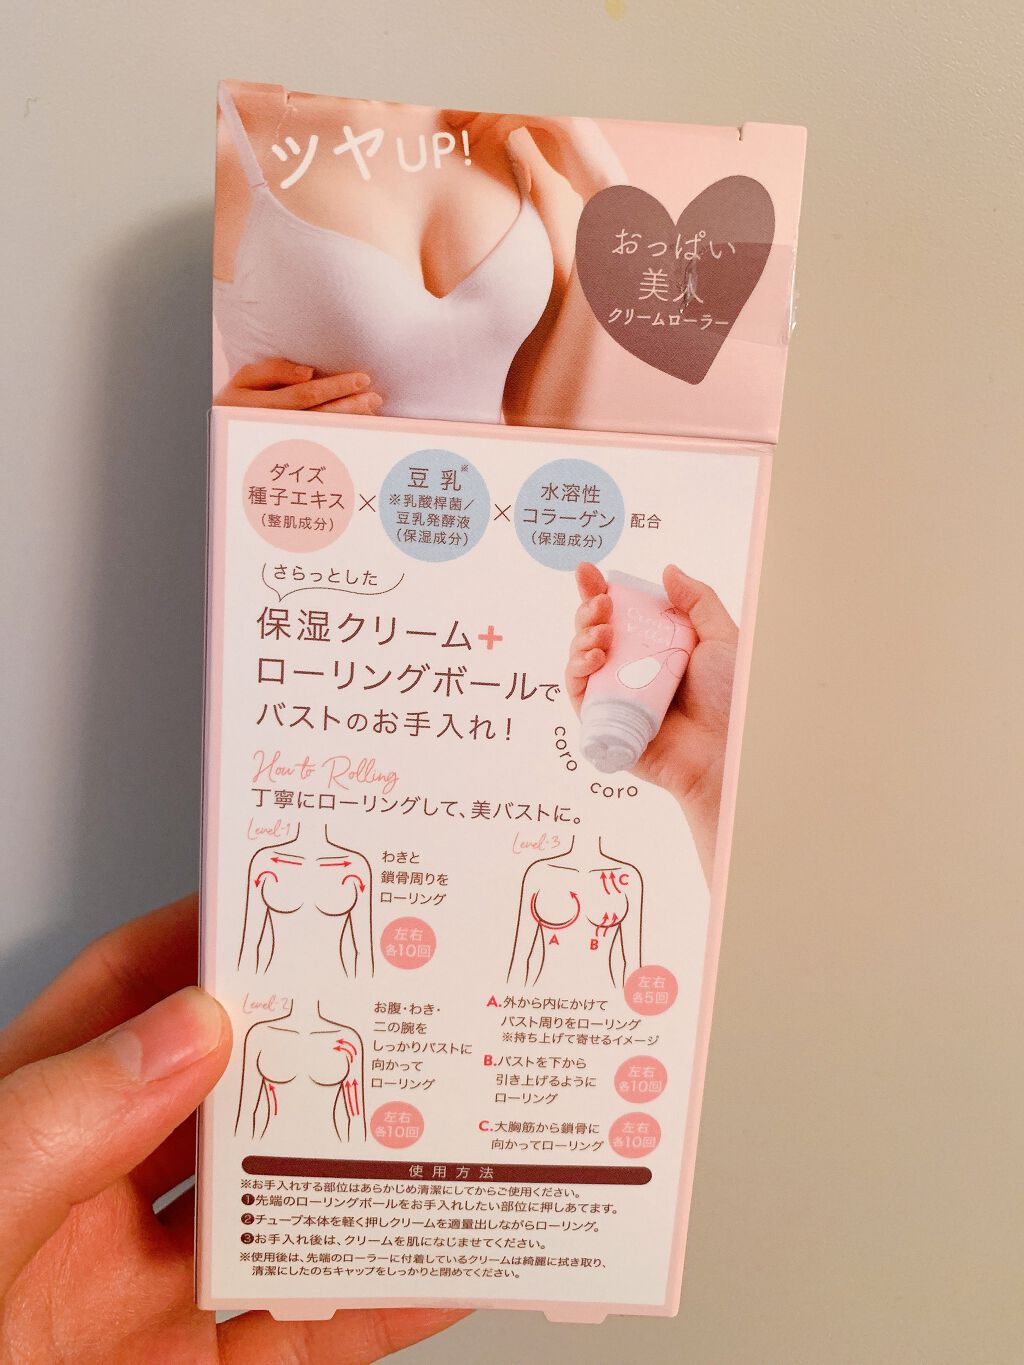 おっぱい美人 クリームローラー コジットの口コミ 超画期的なおっぱいケア お風呂上がり 塗る By Natsumi 混合肌 Lips